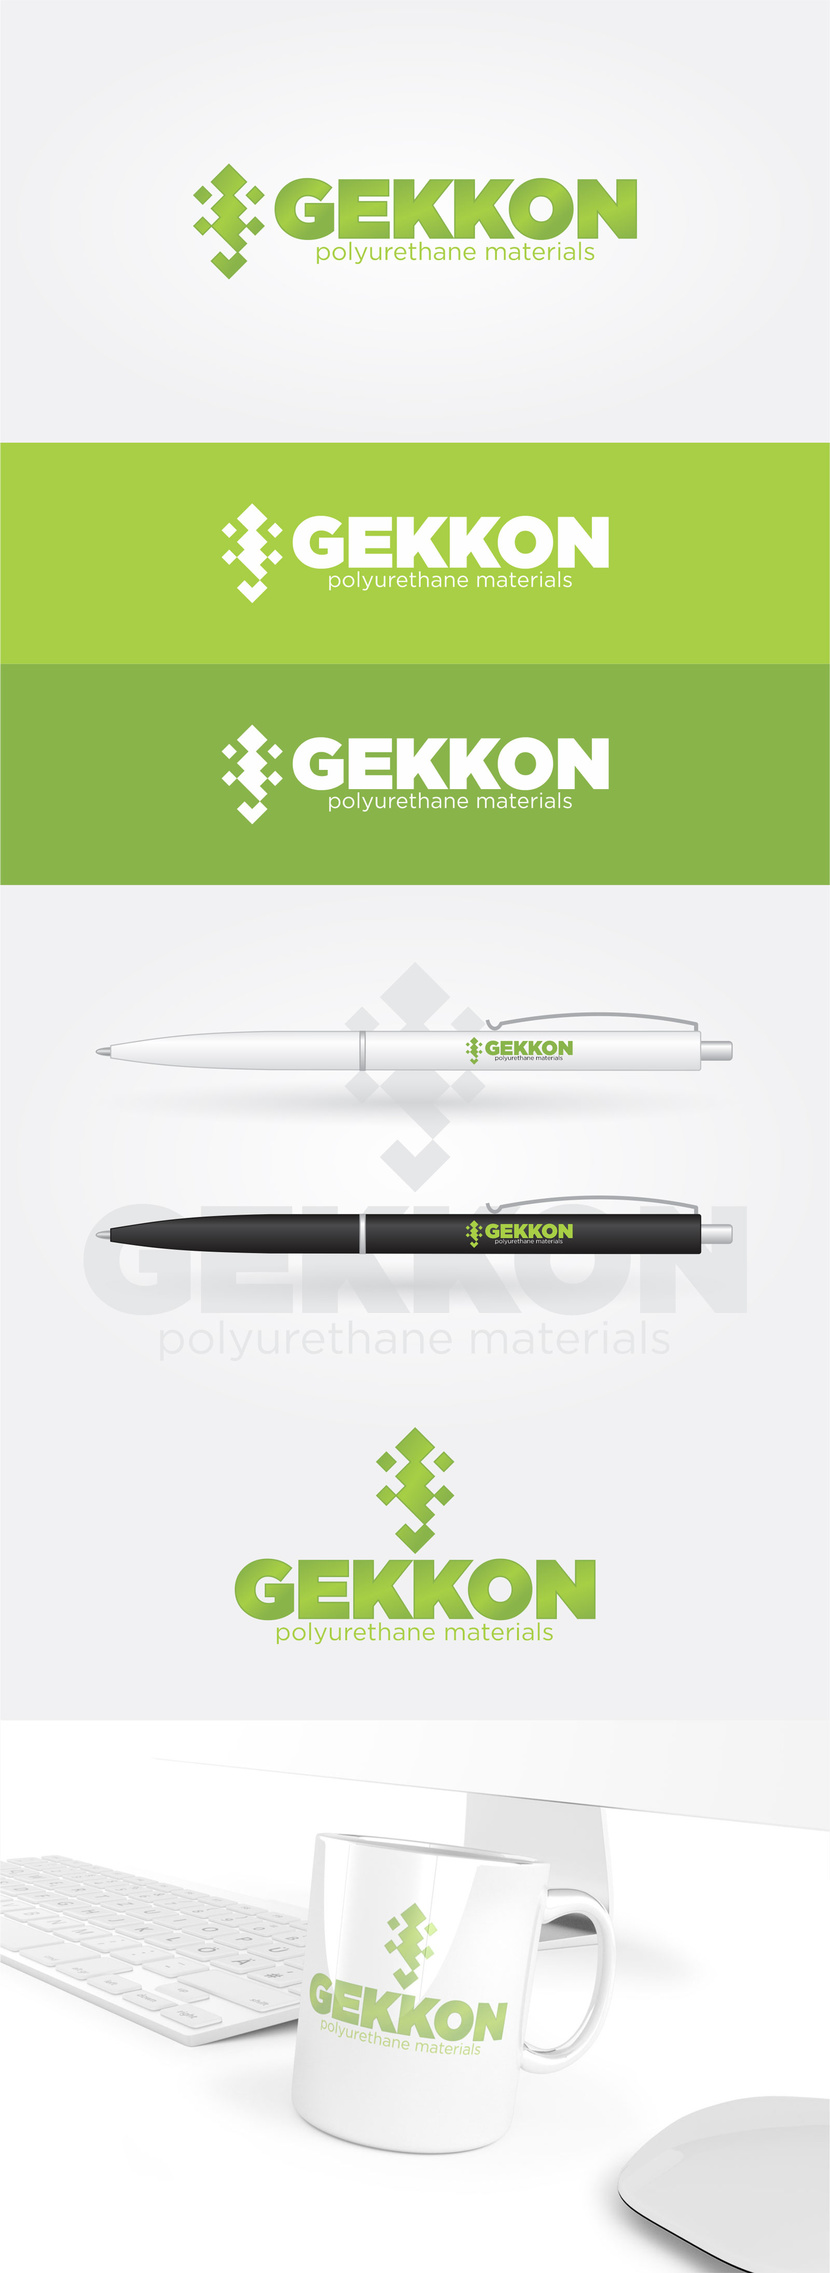 Логотип для производства полиуретановых материалов марки "Gekkon"  -  автор Павел Макарь